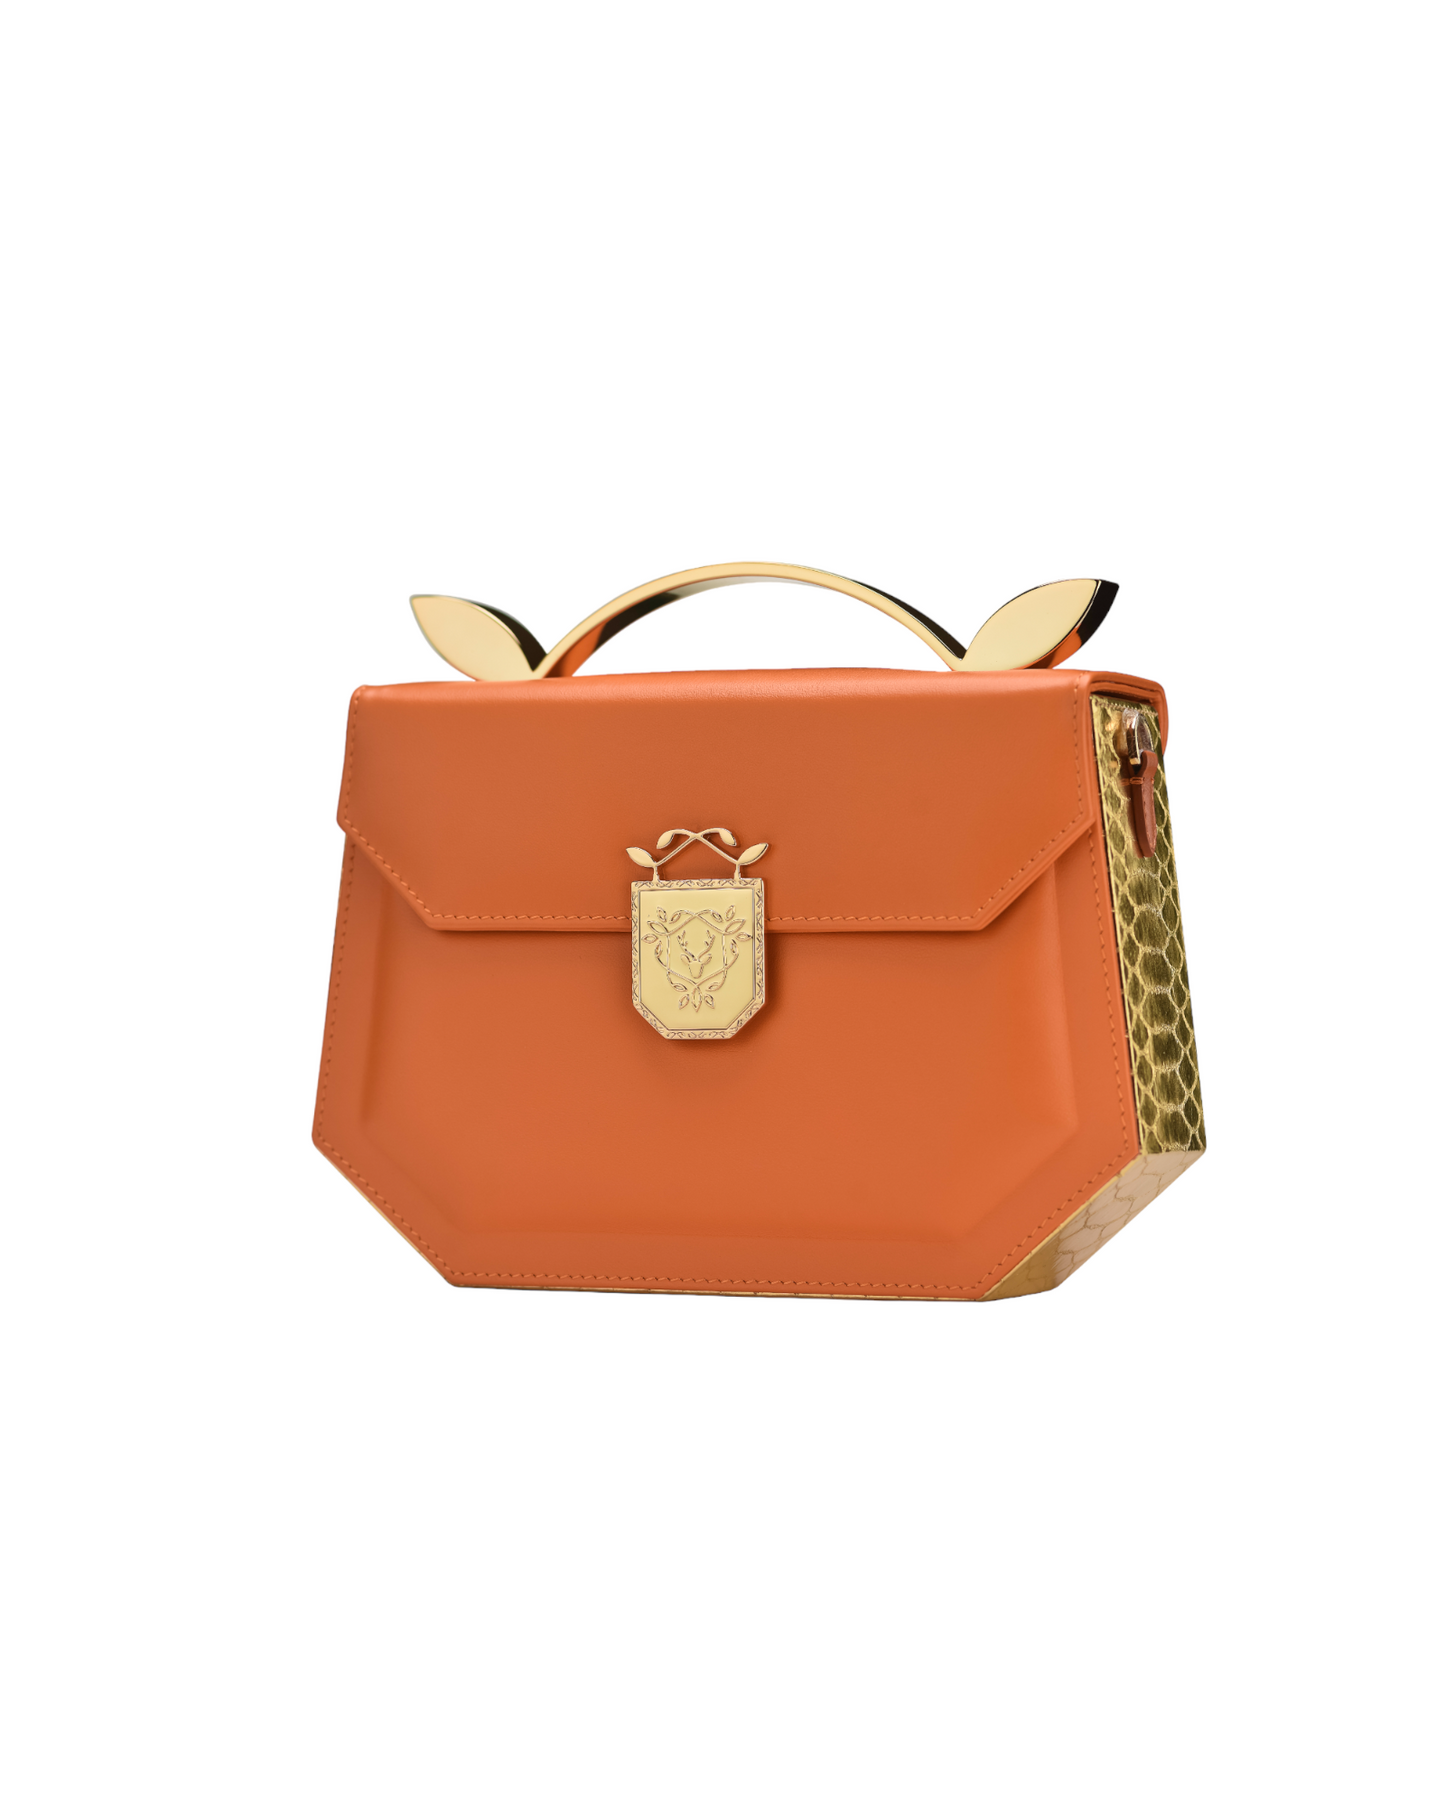 Rania Manasra Shoulder Leather Orange Bag